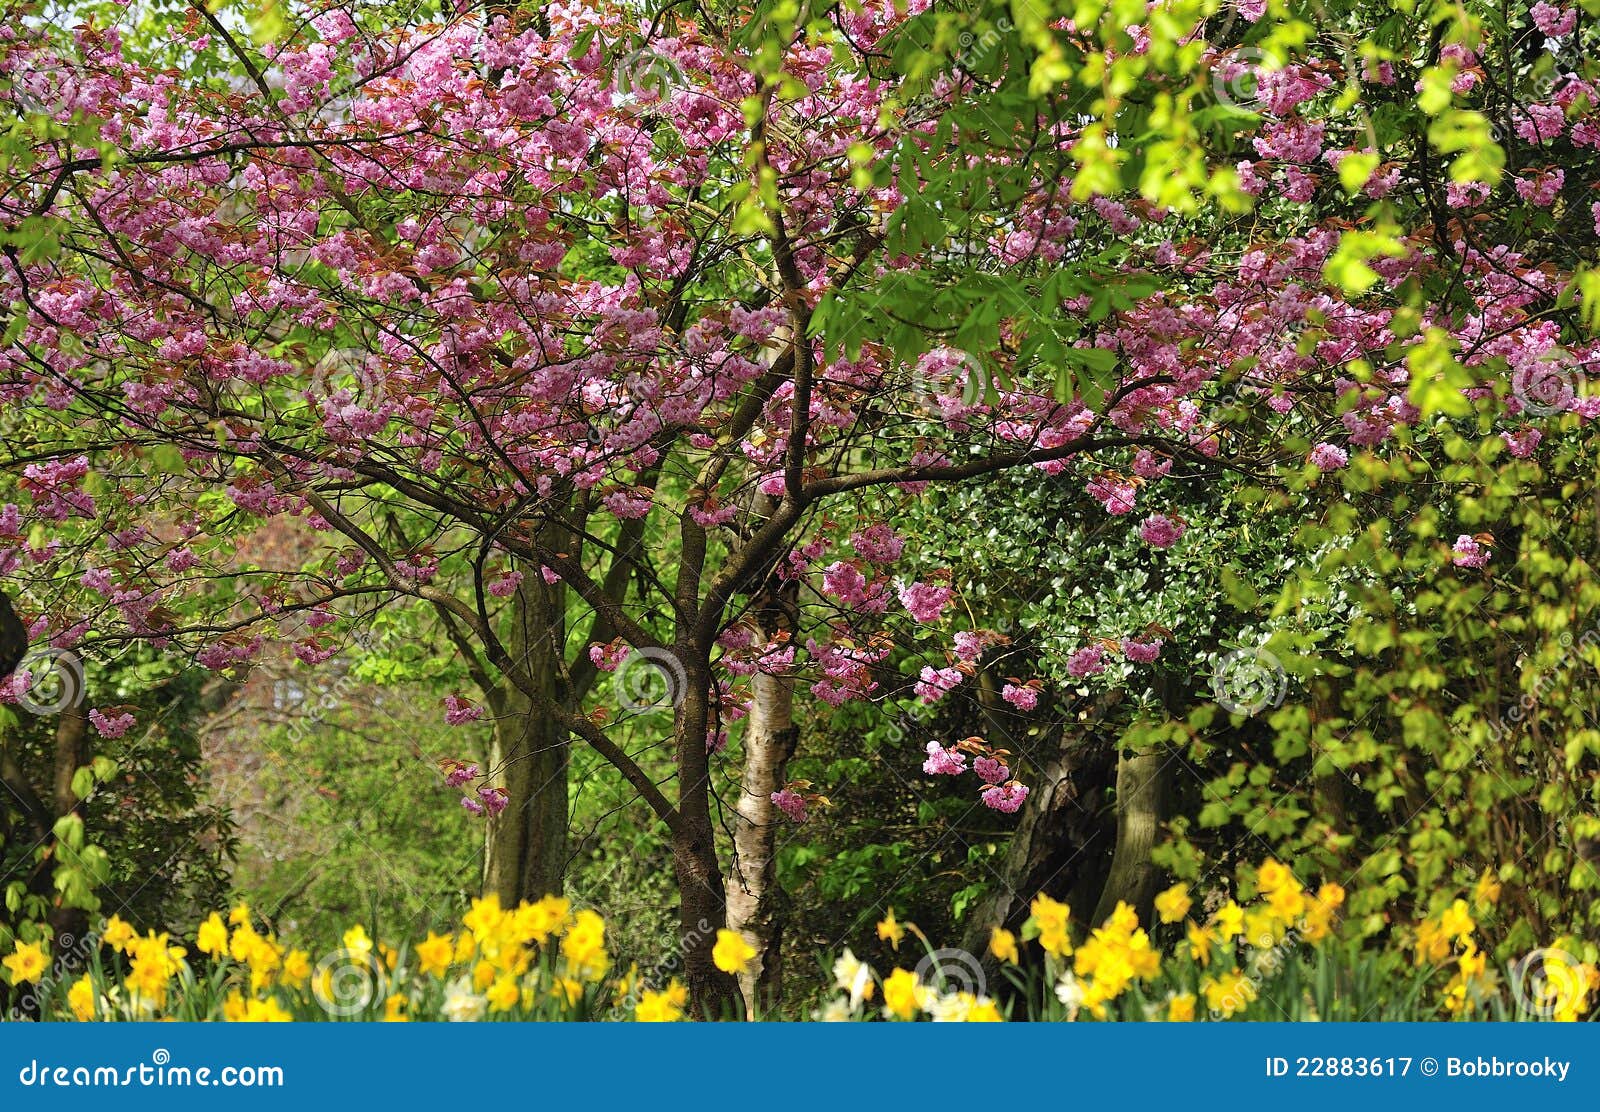 Frühlingslaub. Das frische und bunte Laub, des frühen Frühlinges in einem lokalen Park, Kirschblüte, Narzissen und Laub kennzeichnend.